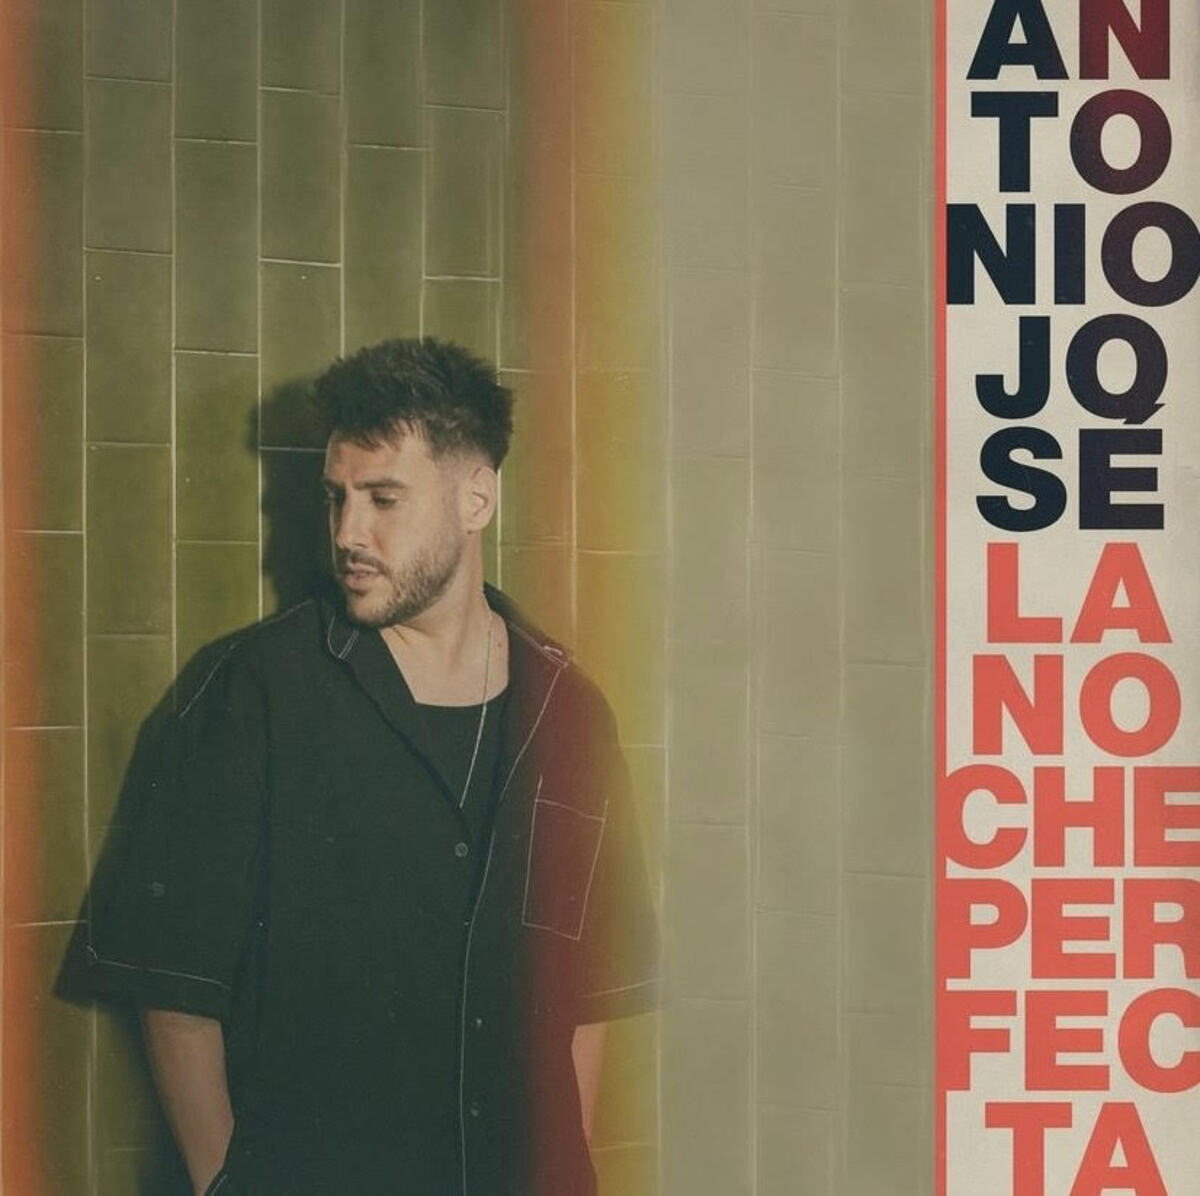 Antonio José lanza 'La Noche Perfecta', fusionando bachata y pop